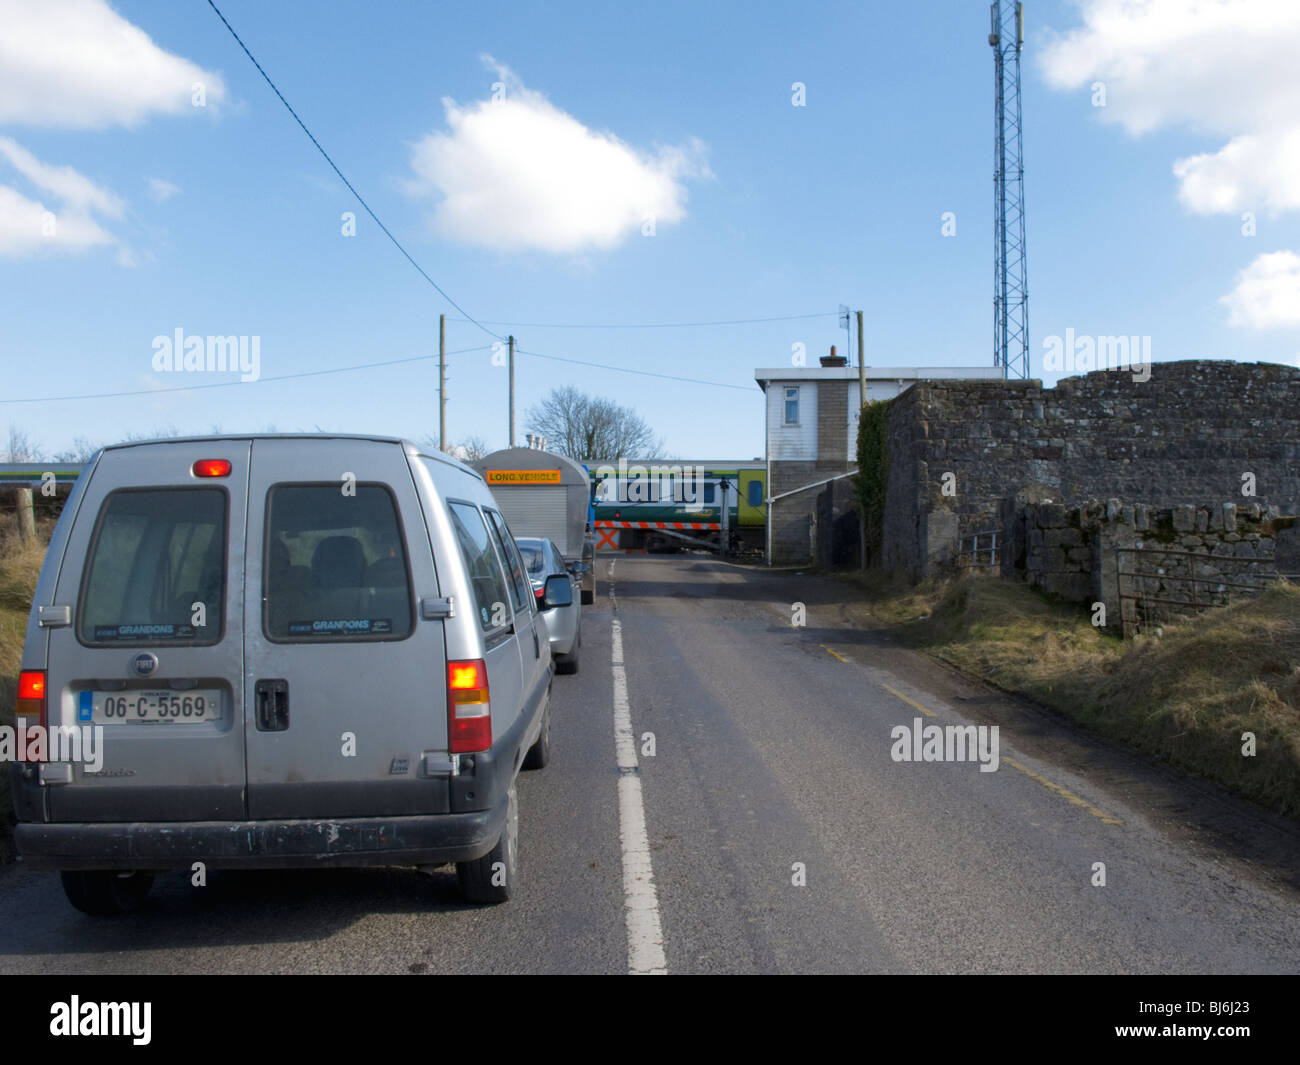 L'attente aux voitures de passage à niveau, le comté de Limerick Irlande Banque D'Images